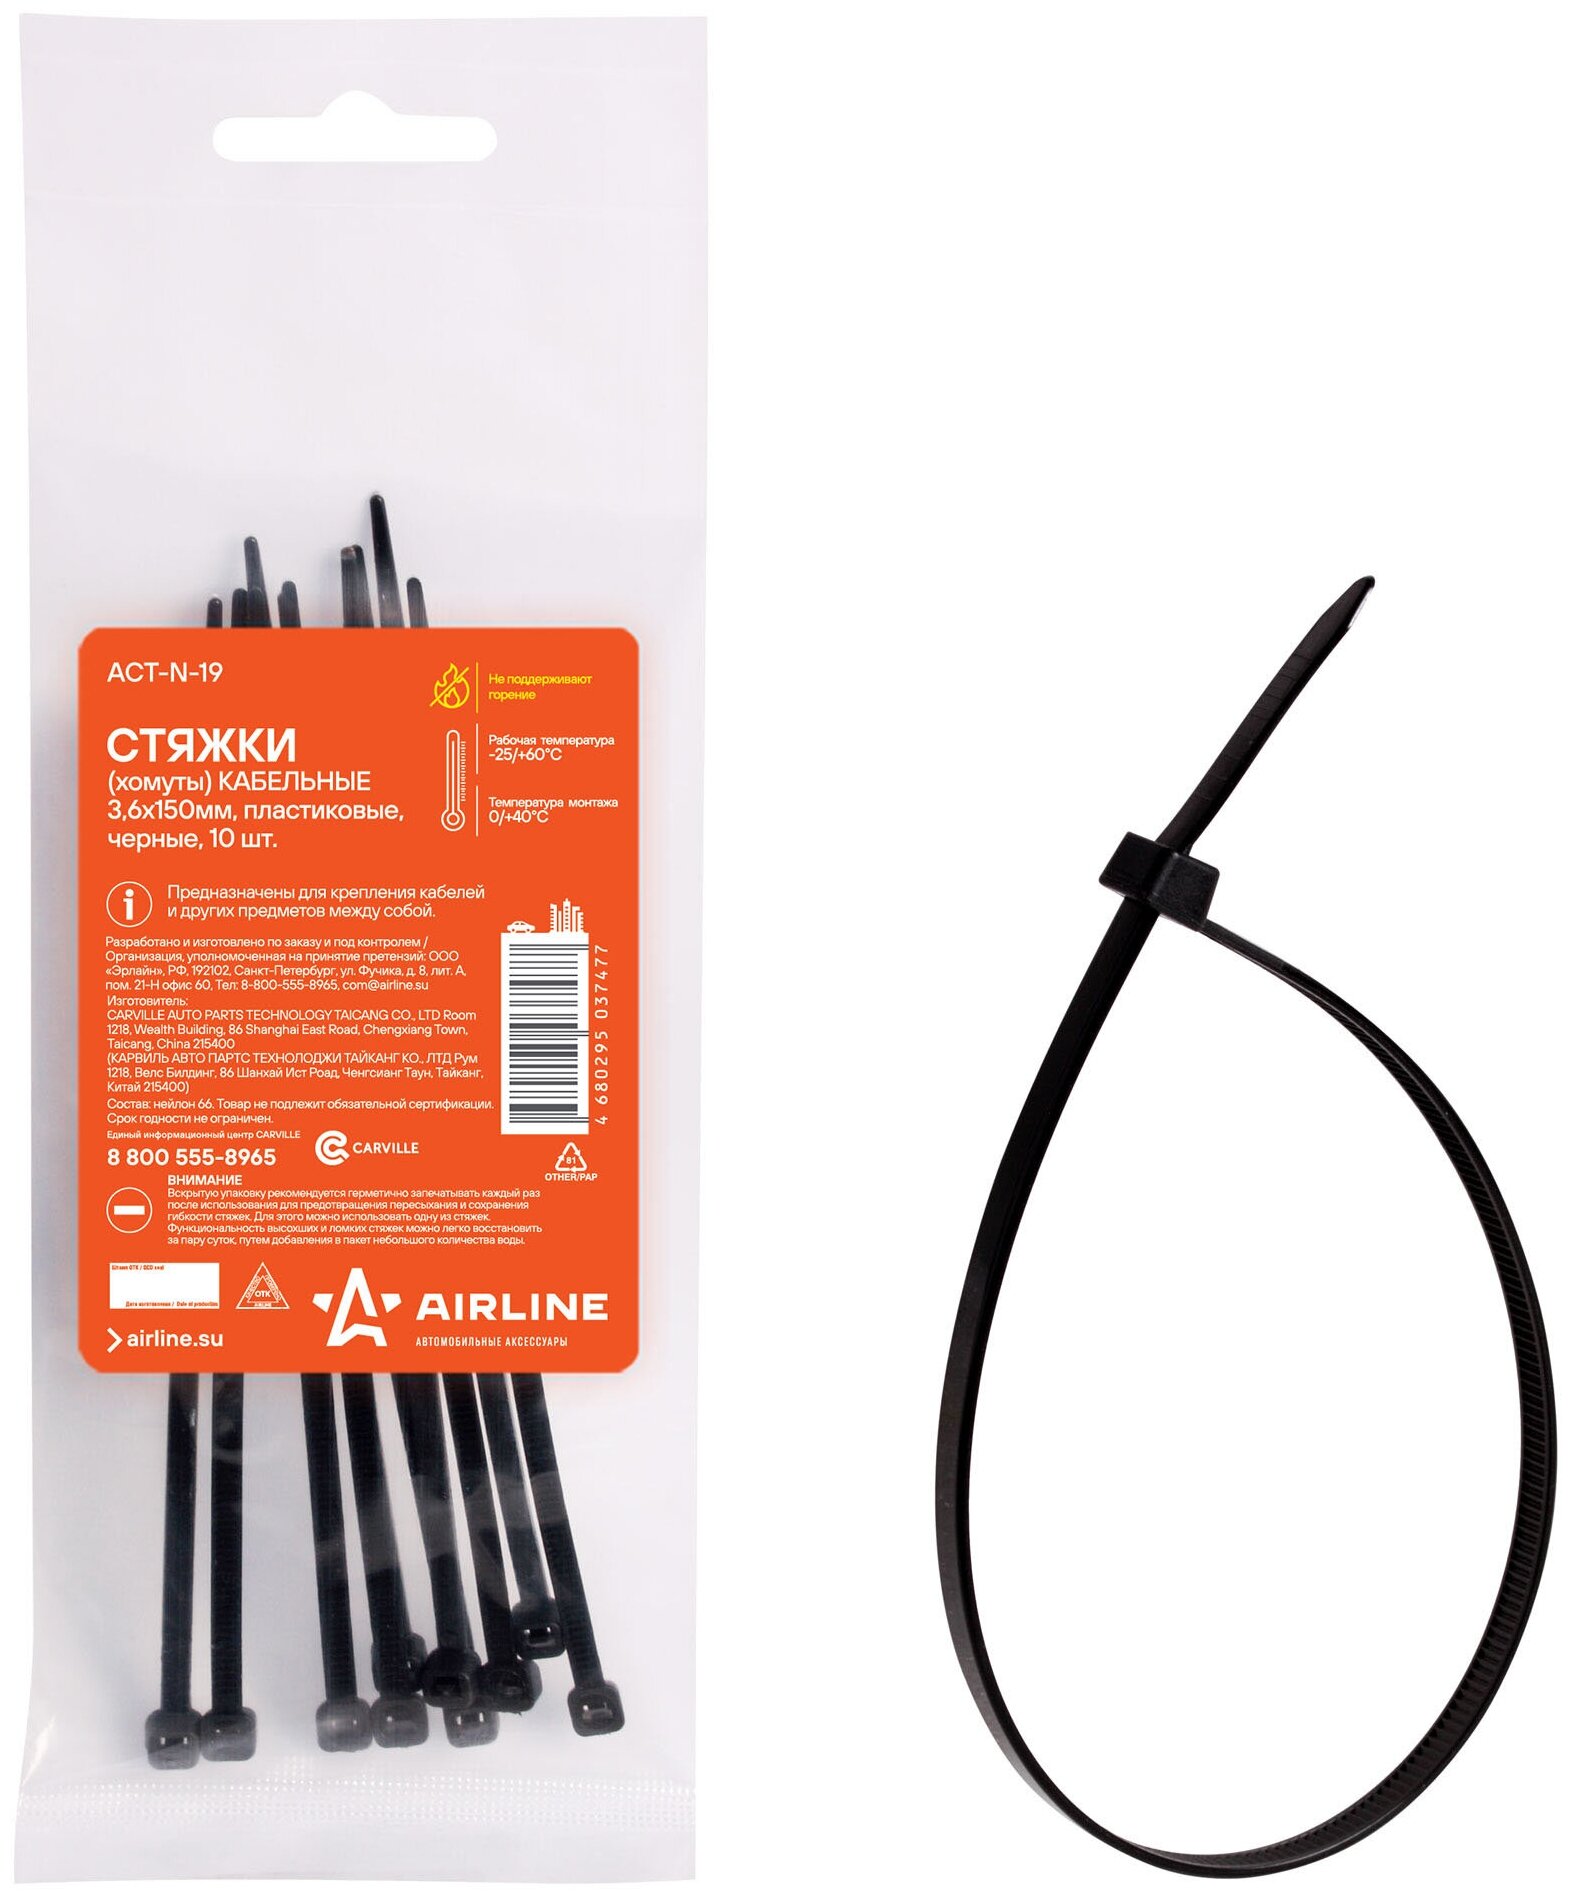 Стяжки (хомуты) кабельные 3,6*150 мм, пластиковые, черные, 10 шт. ACT-N-19 AIRLINE